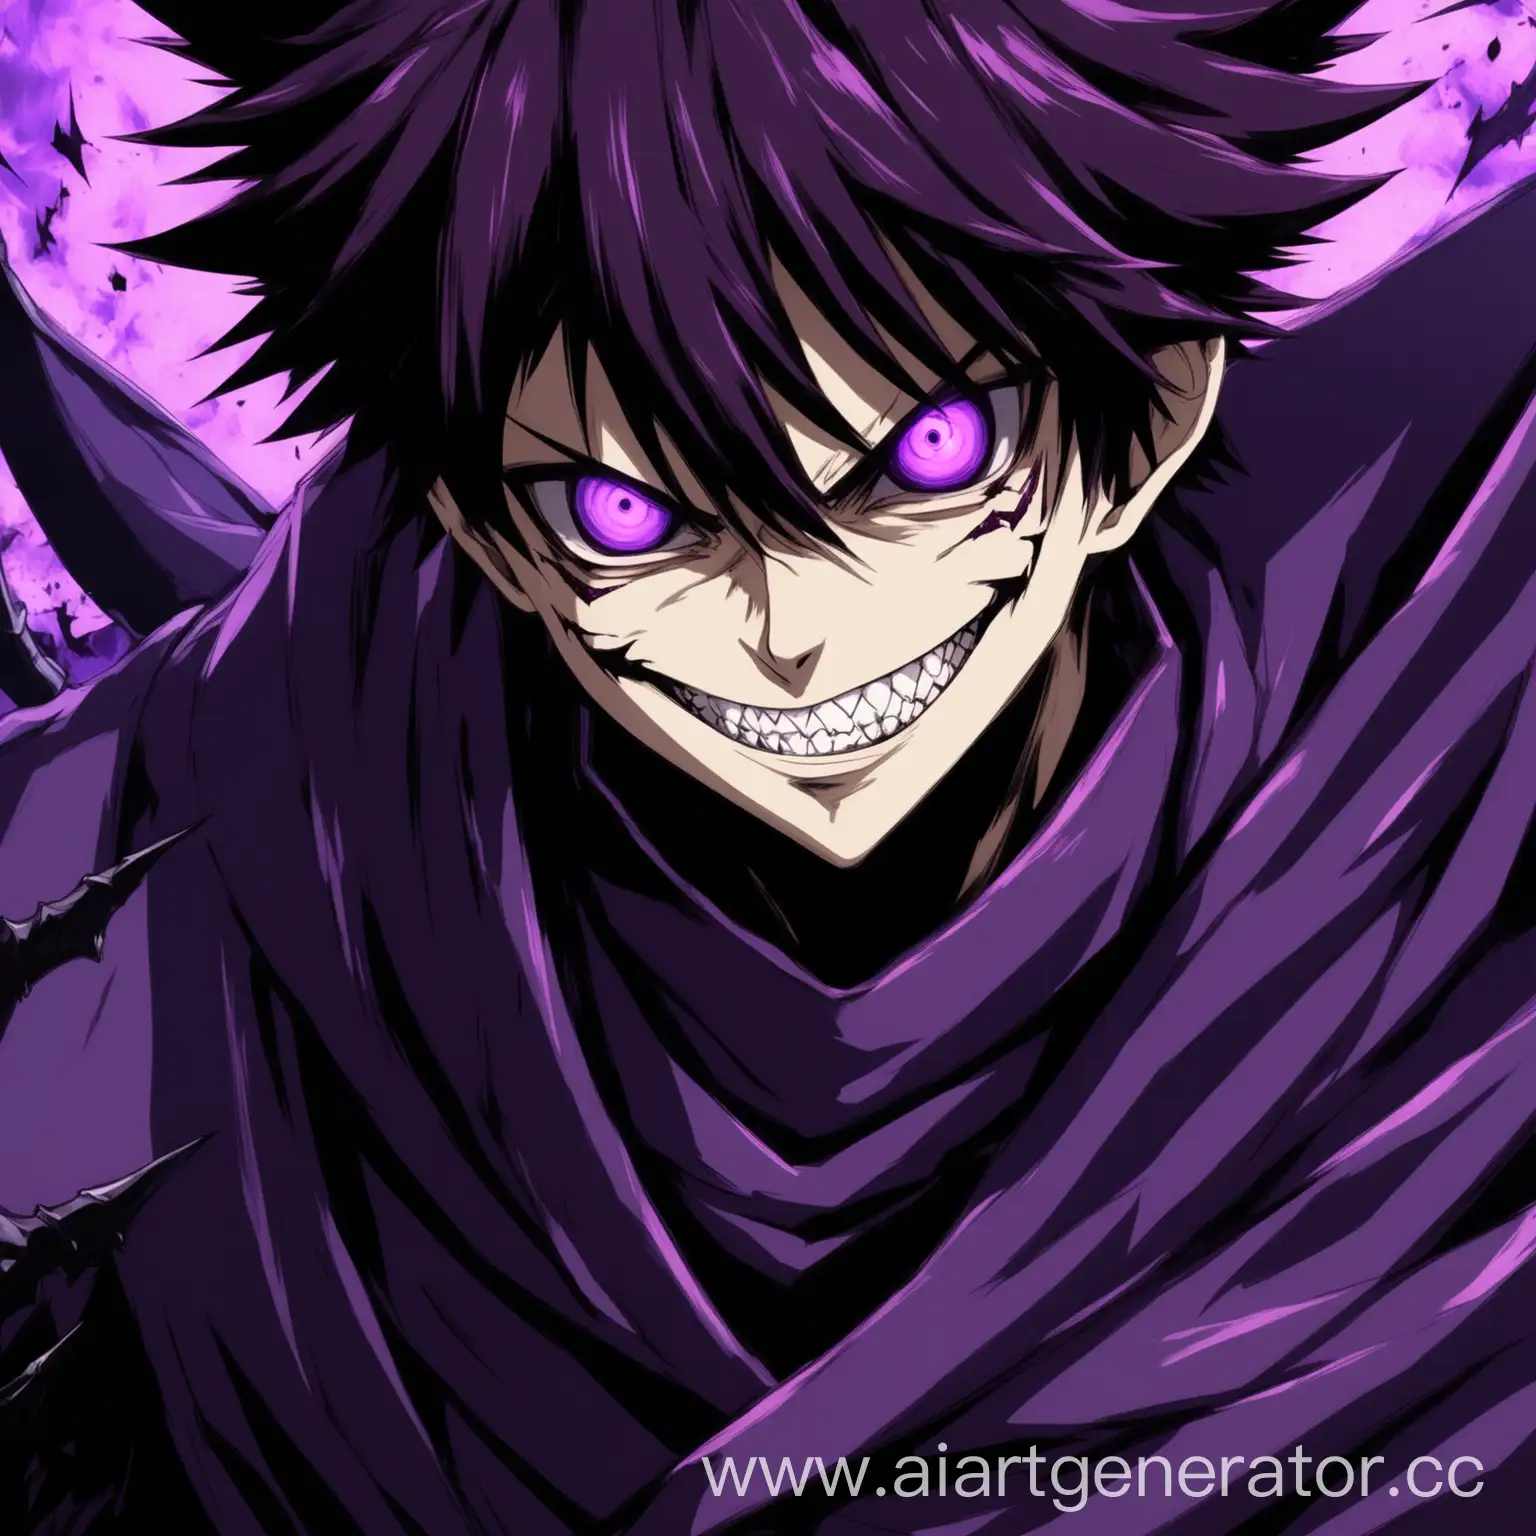 Аниме персонаж парень, с злобной улыбкой и фиолетовым цветом одежды смотрит злобно вперед